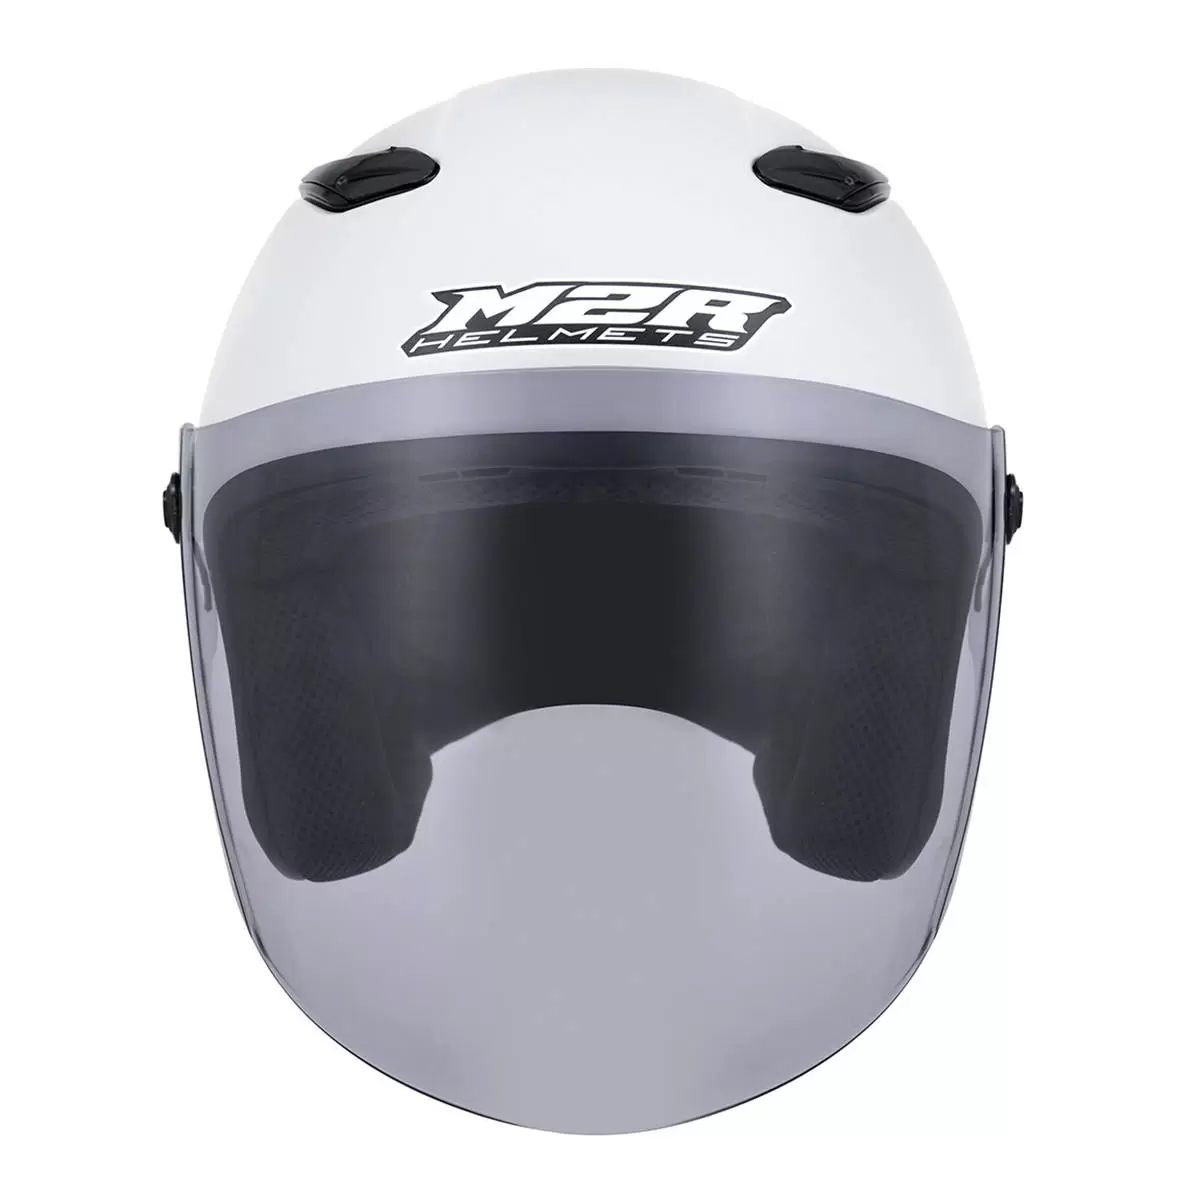 M2R 3/4罩安全帽 騎乘機車用防護頭盔 M-700 消光白 M